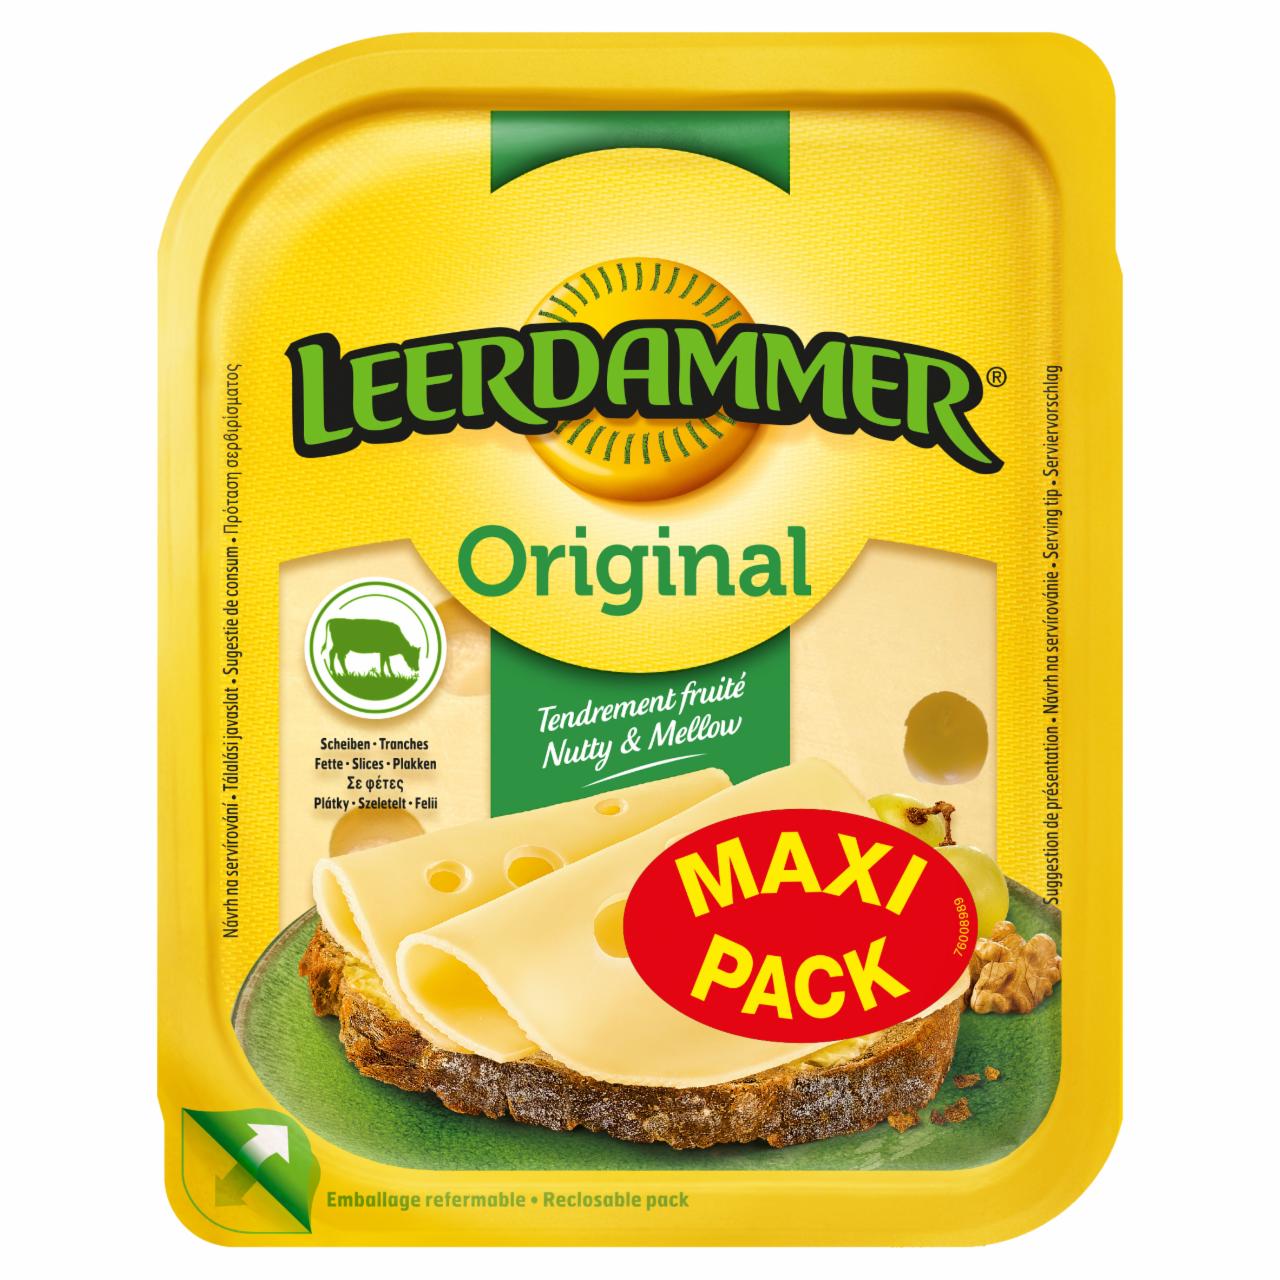 Képek - Leerdammer Original laktózmentes zsíros, félkemény, szeletelt sajt 140 g